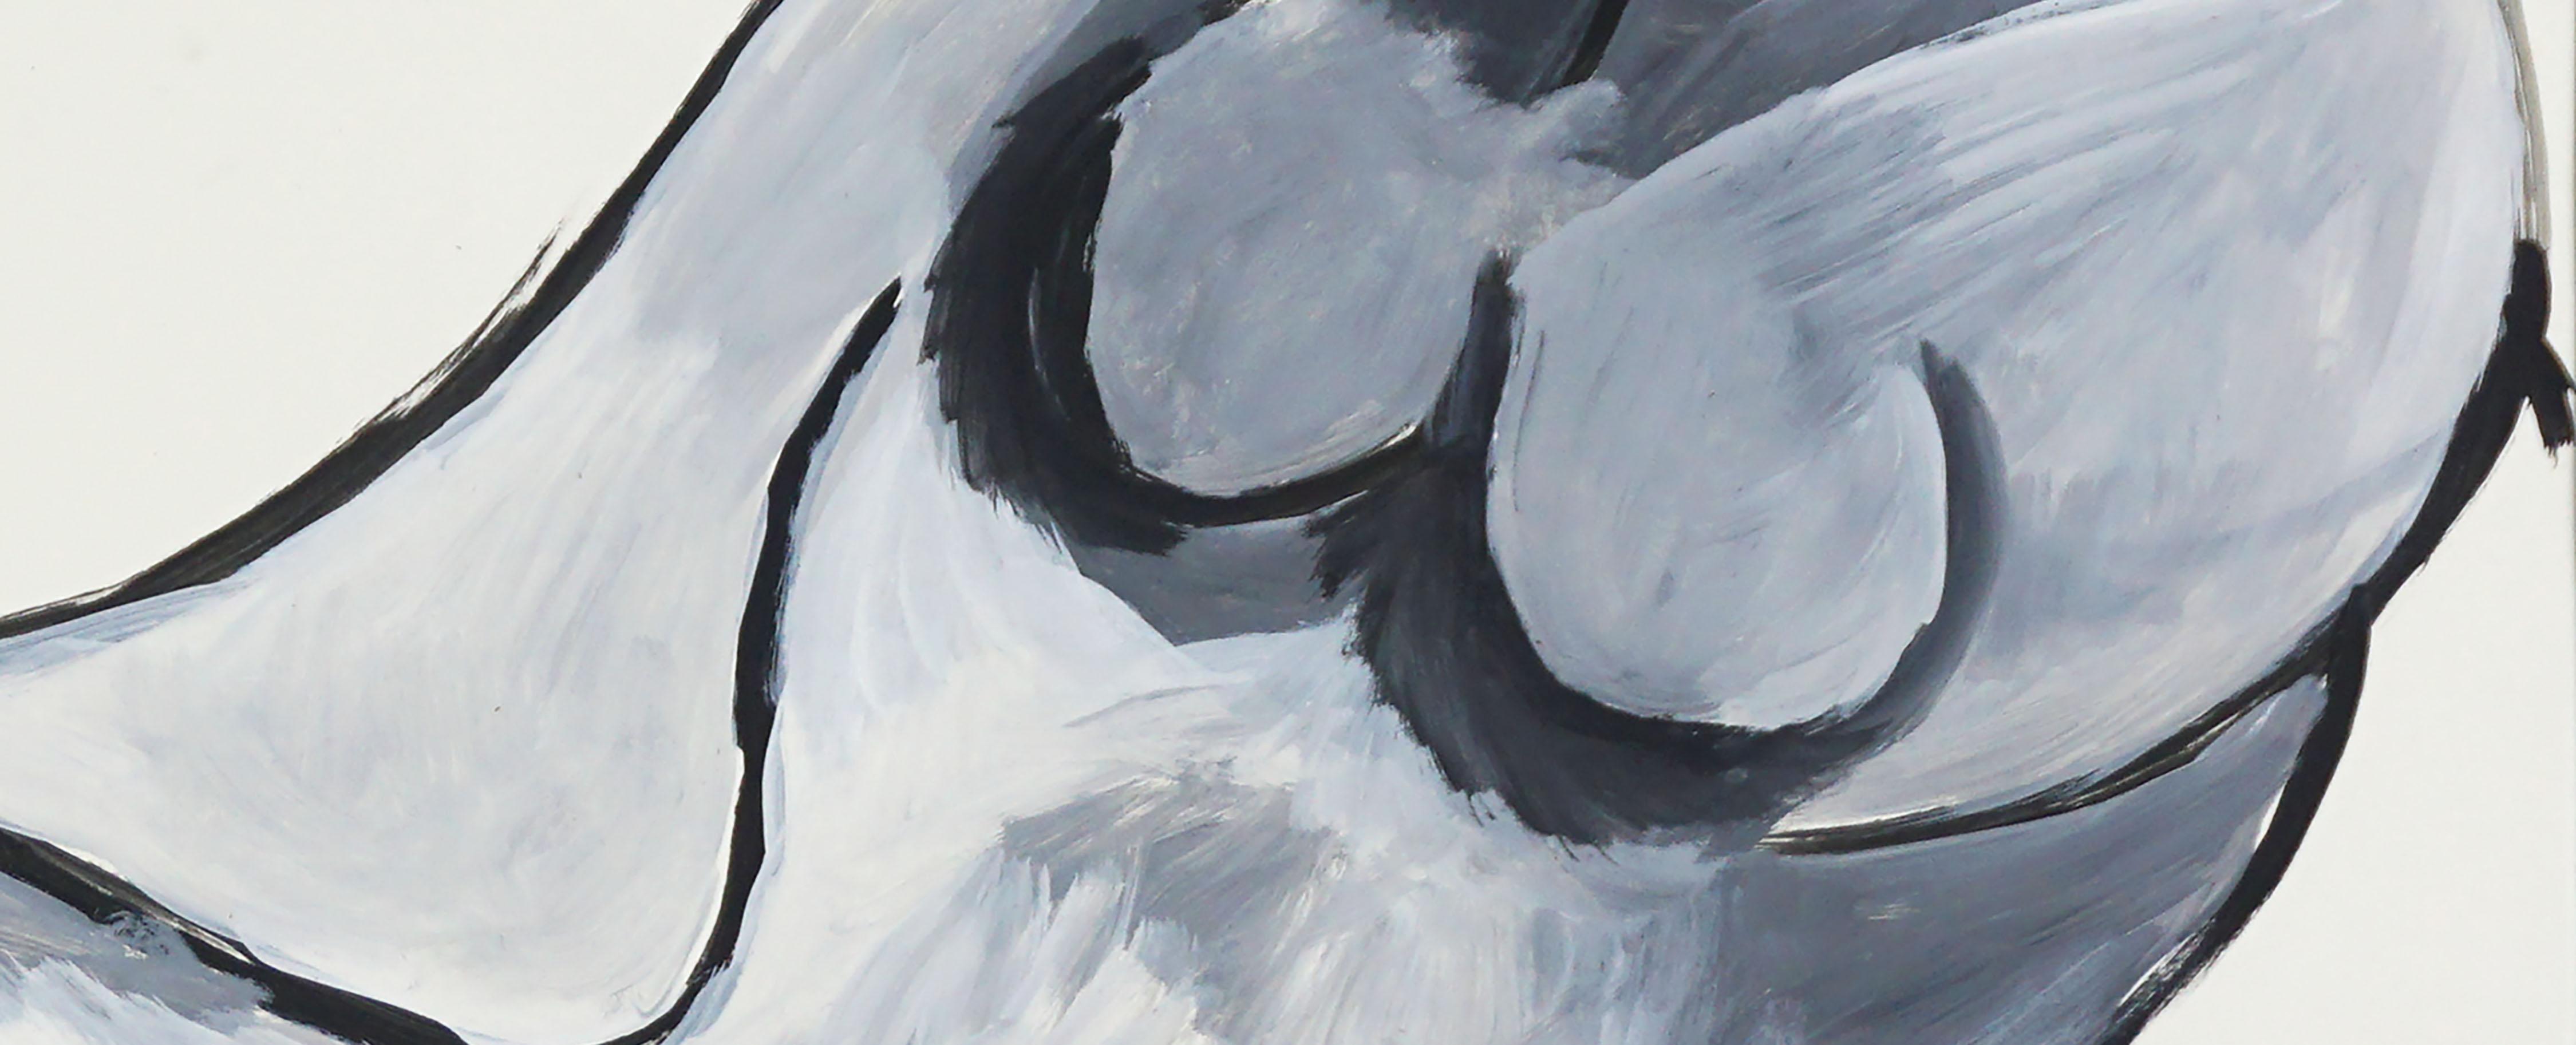 Abstrakter Expressionist Liegender Akt in Schwarz und Grau
Wunderschöner liegender Akt in Schwarz- und Grautönen von Michael William Eggleston (Amerikaner, 20. Jahrhundert), um 2000. Unsigniert, aber mit einer Sammlung von Werken des Künstlers